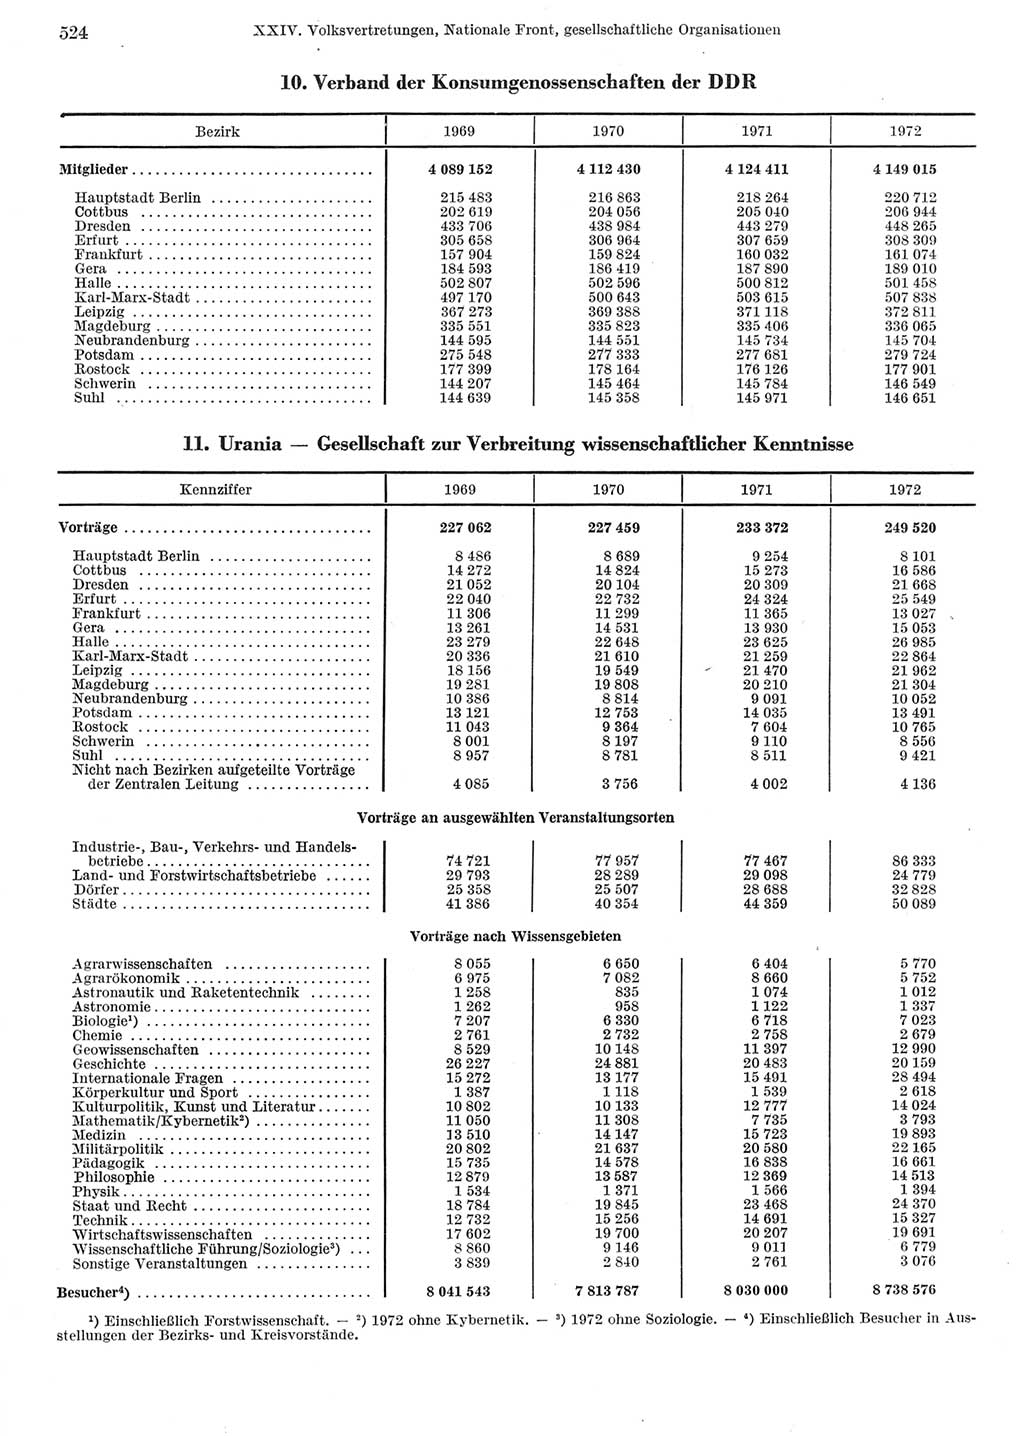 Statistisches Jahrbuch der Deutschen Demokratischen Republik (DDR) 1973, Seite 524 (Stat. Jb. DDR 1973, S. 524)